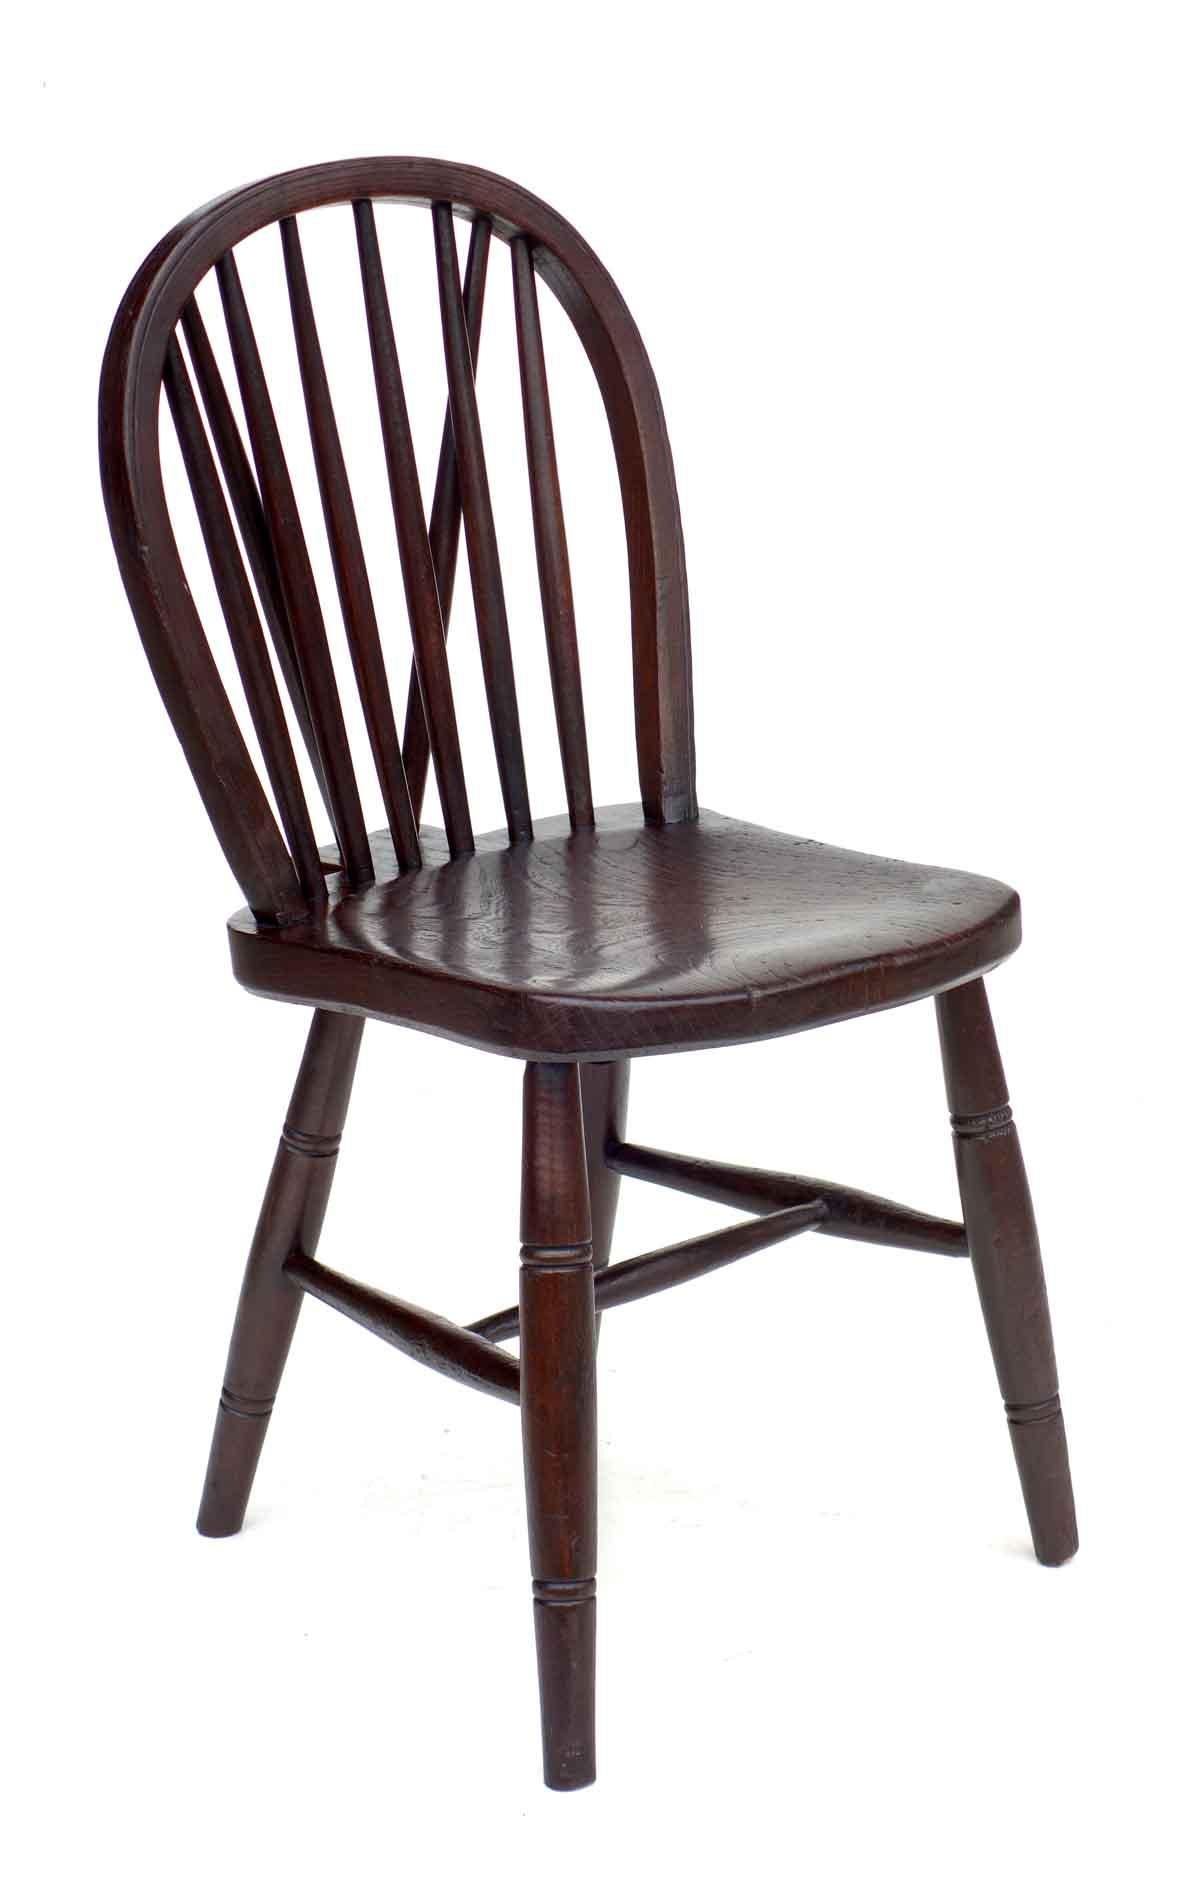 Ensemble de 6 chaises Windsor.
par John Gomm
Angleterre, 1930-1940

Excellente condition.